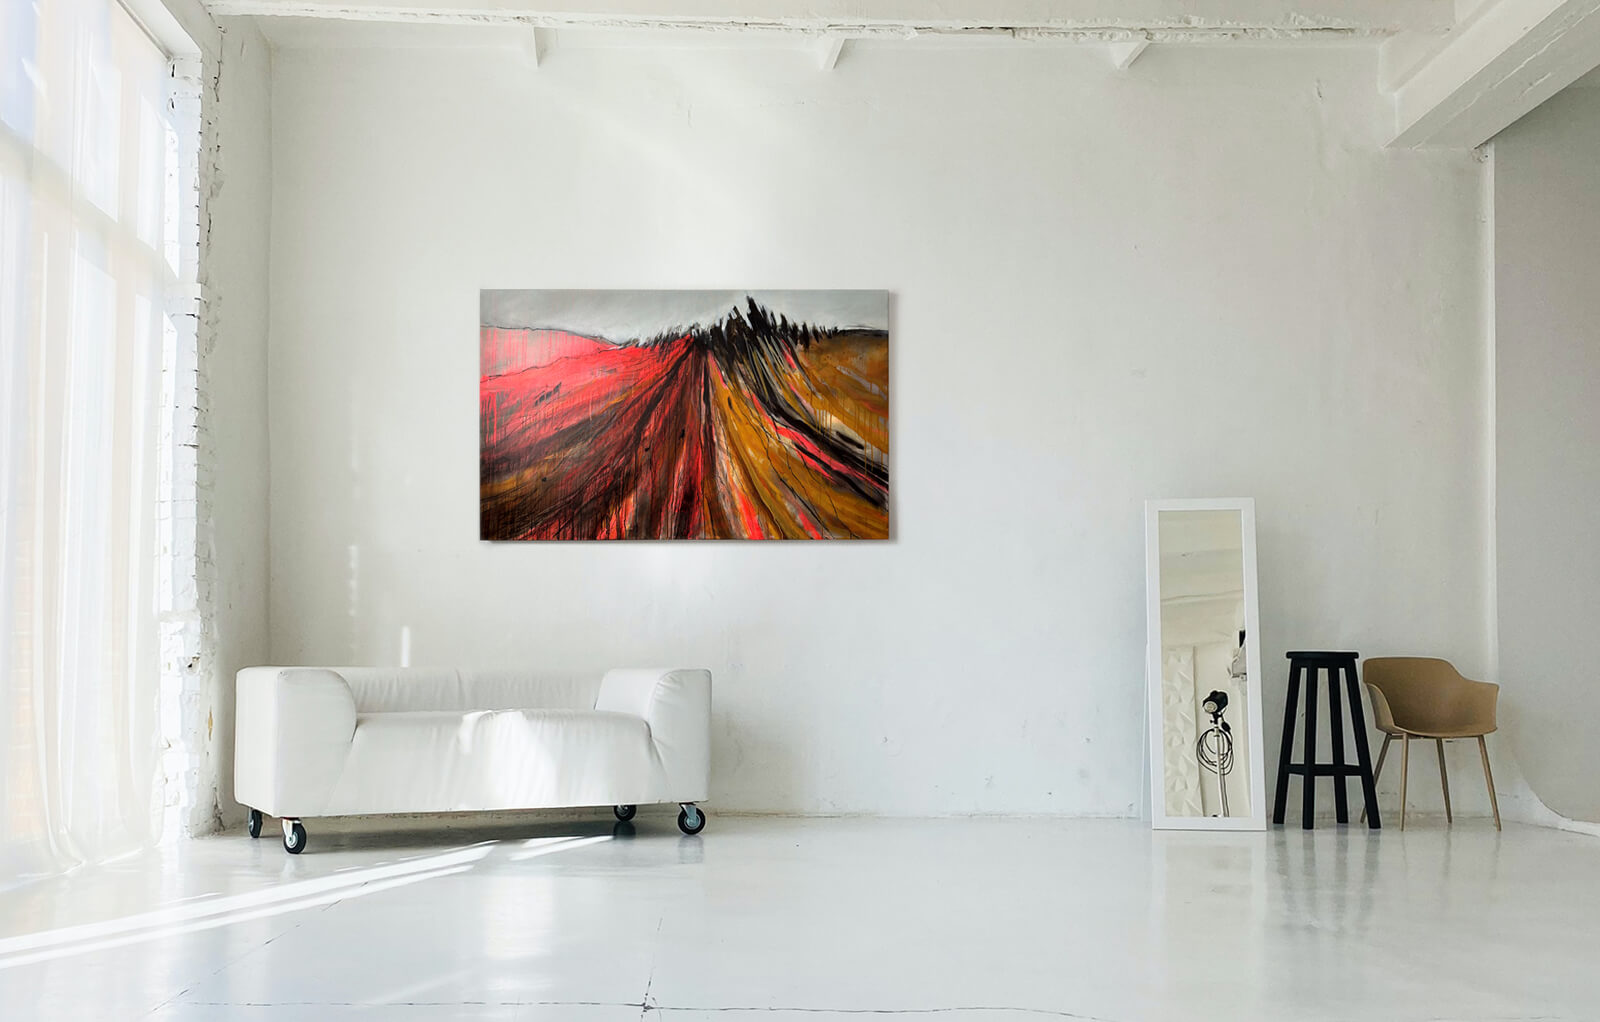 Abstrakte Landschaft 'Erdrauschen': großes Bild mit kräftigen Farben an einer Wand in einem Loft.